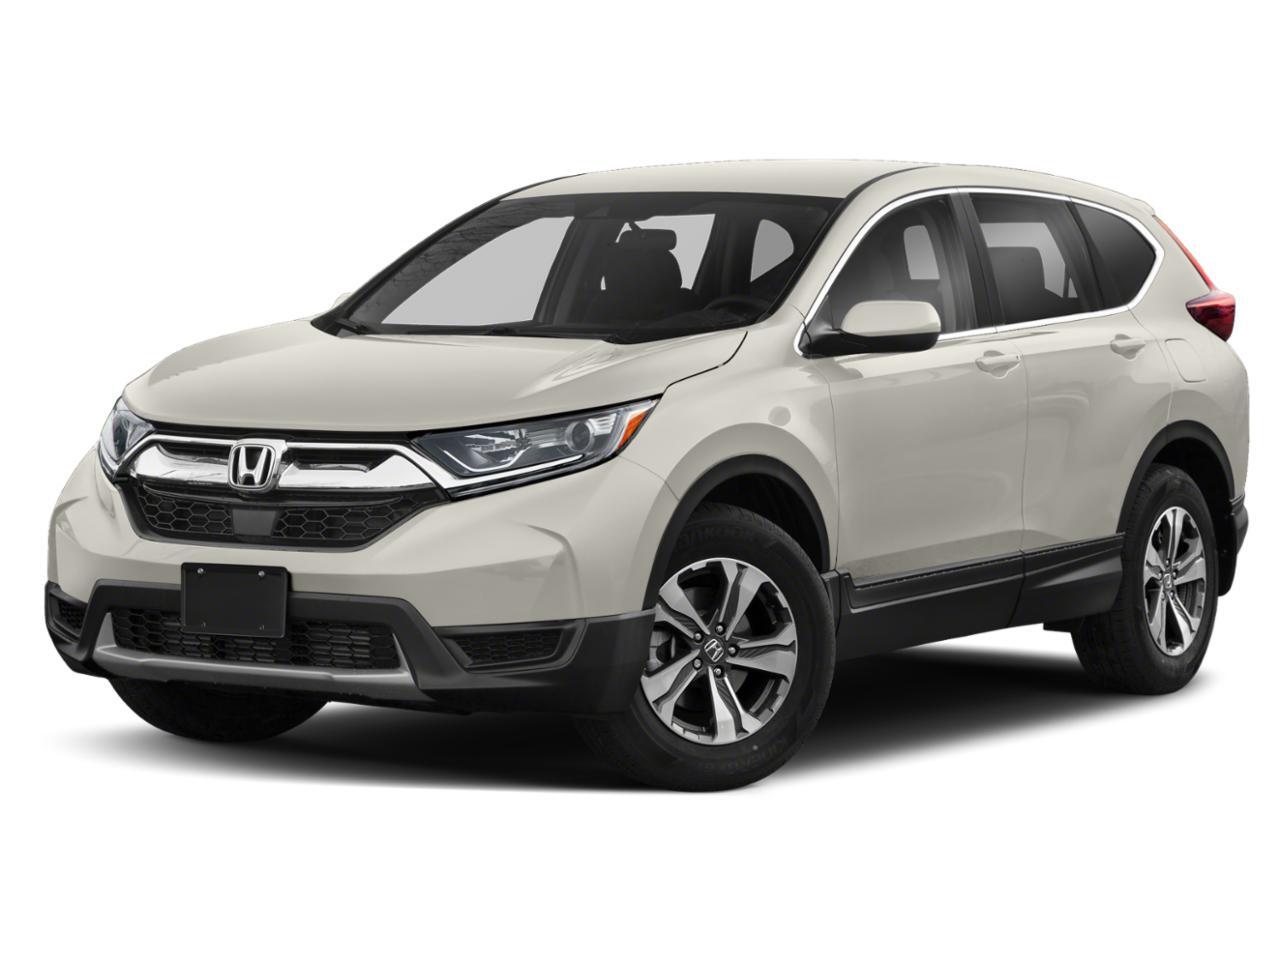 2019 Honda CR-V Alloys, Heated Seats, AWD